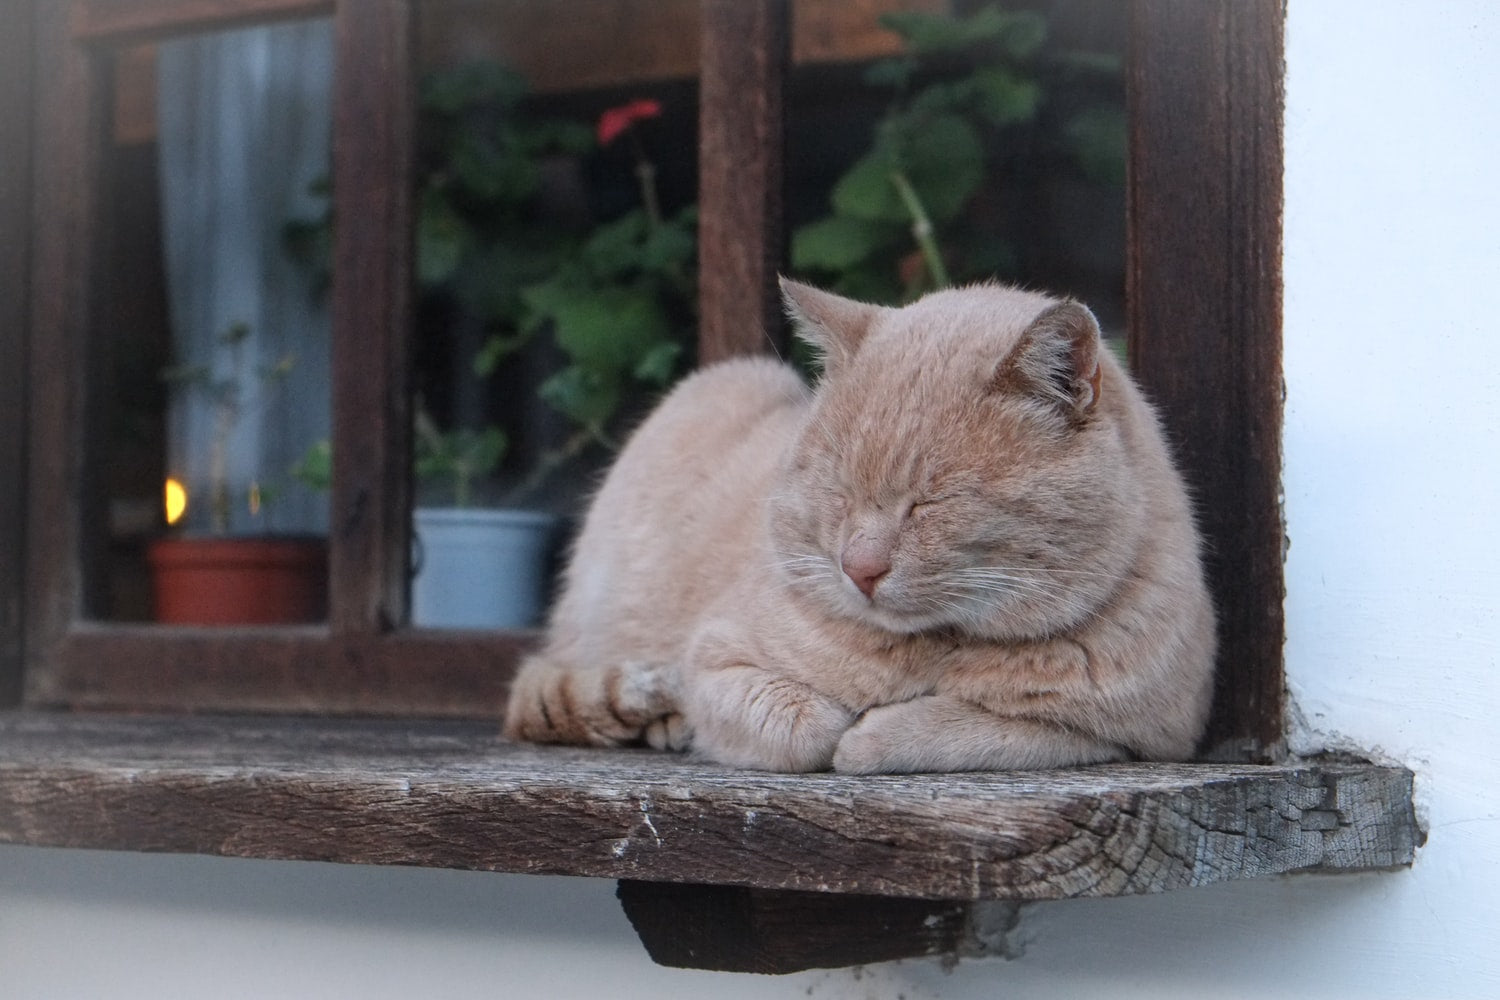 Cute buff cat sleeping on a wooden window